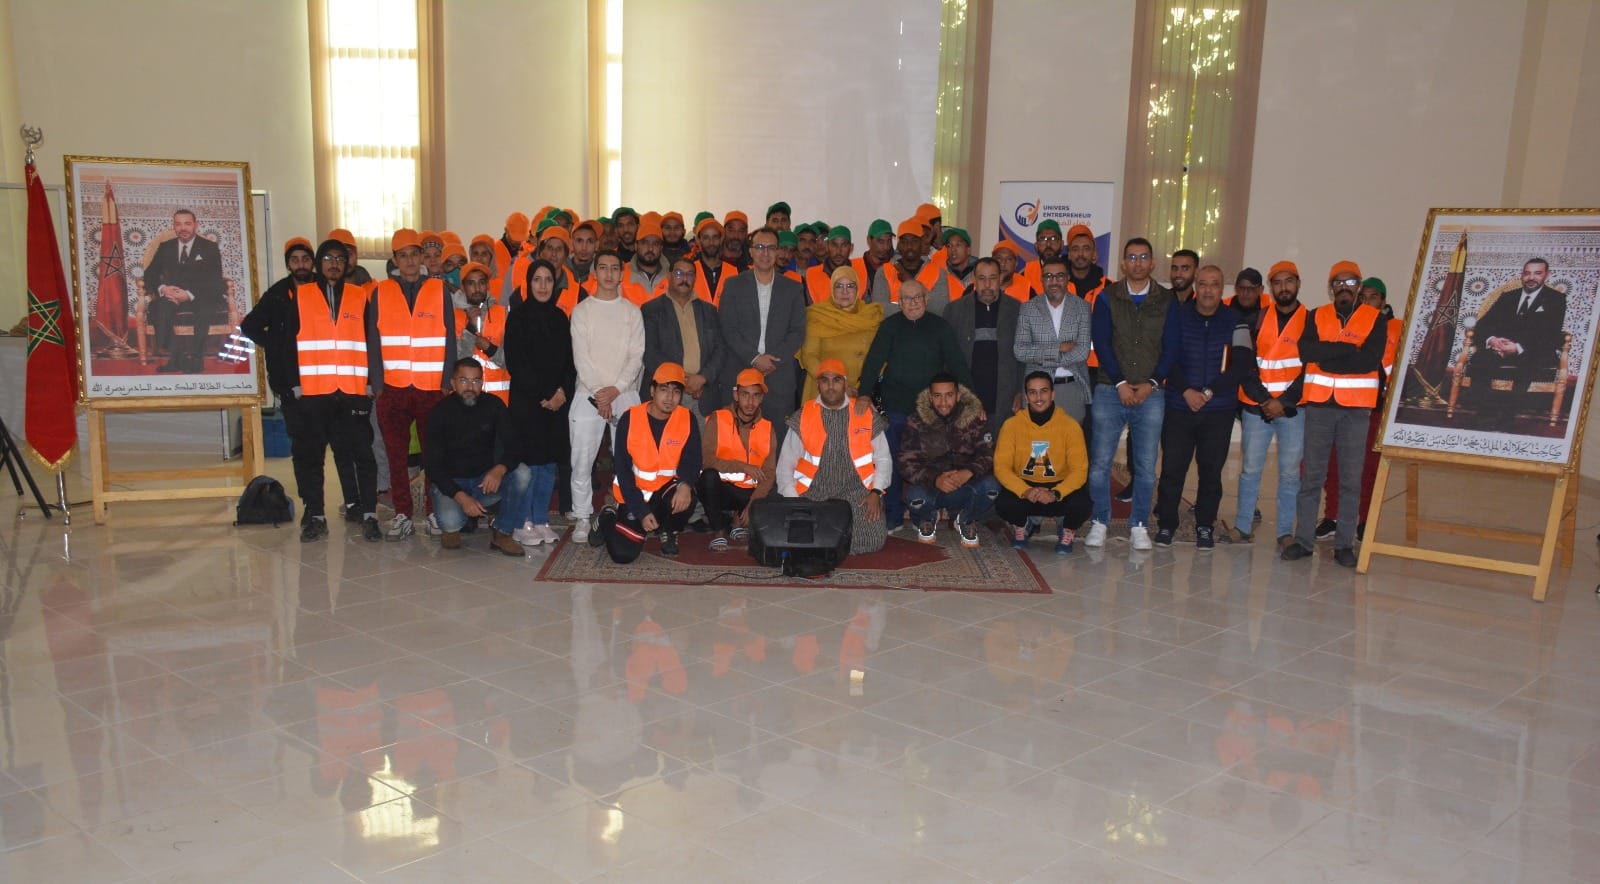 تنزيل مشاريع برنامج أوراش 2 بجماعة أيت ملول - المشروع 1 (112 عامل في النظافة والبستنة والحراسة).